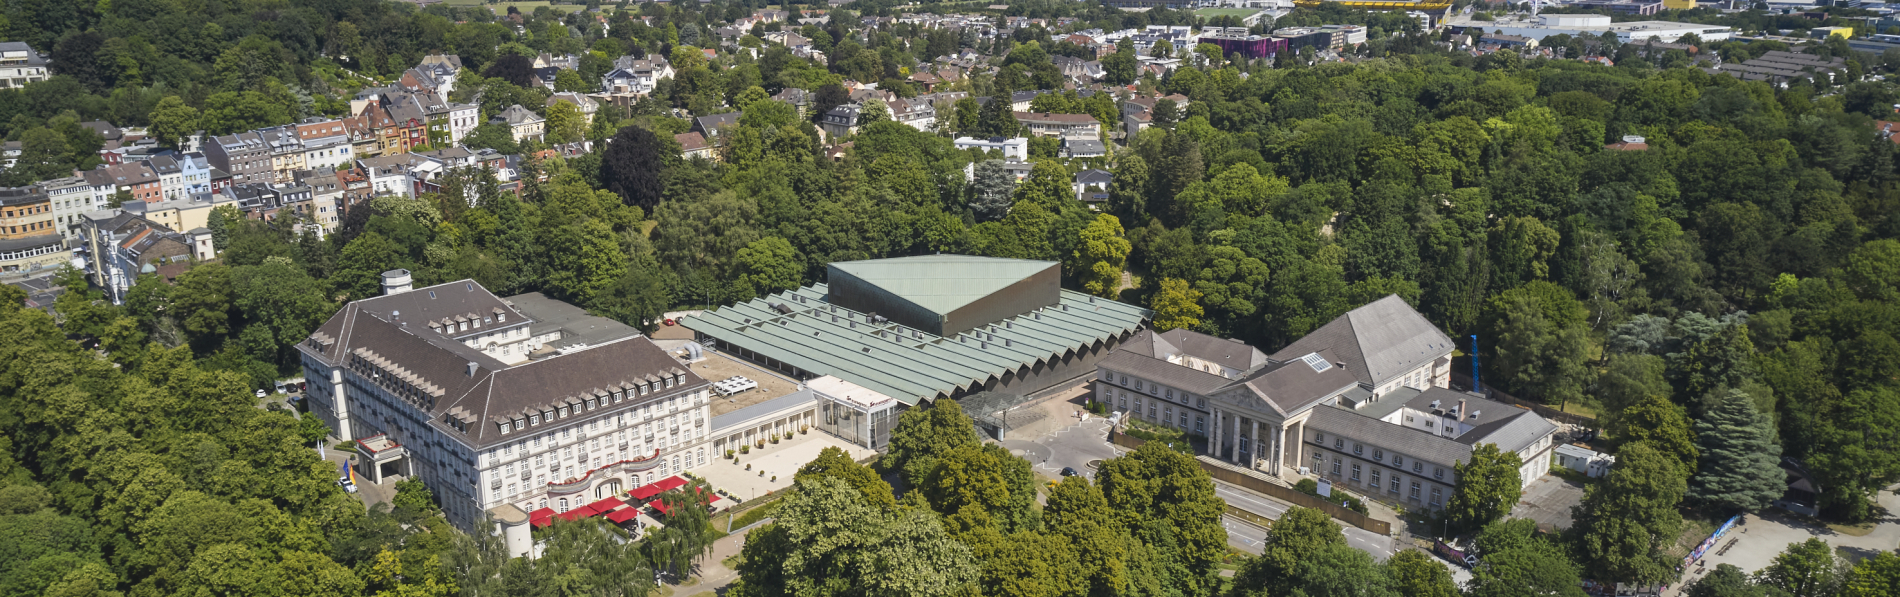 Parkhotel Quellenhof Aachen - Asset Manager Jagdfeld Real Estate